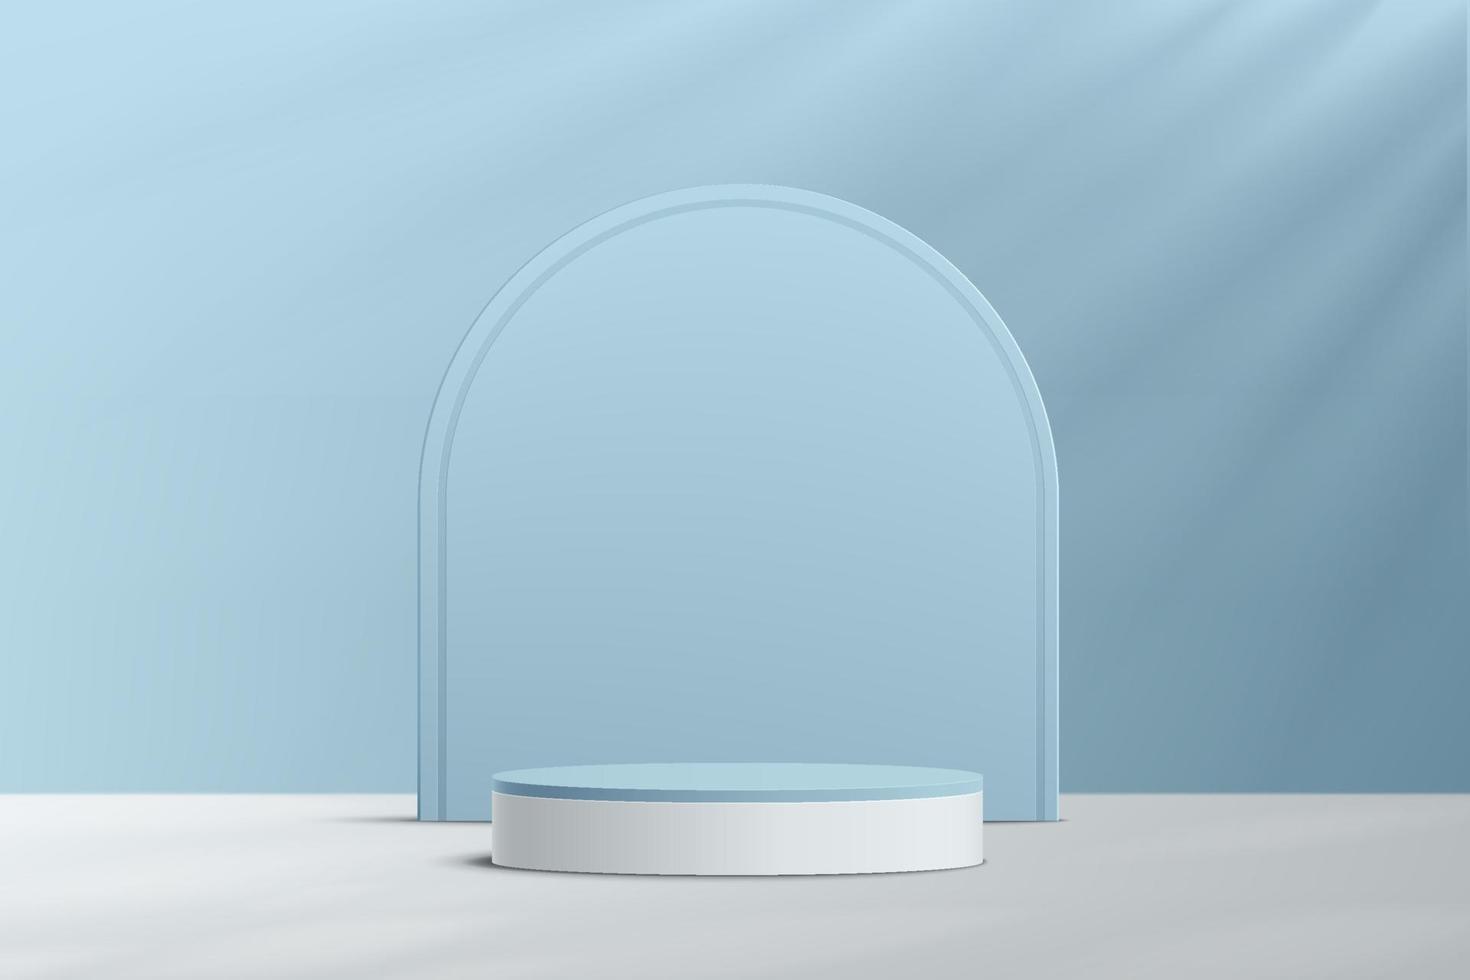 Pódio do pedestal do cilindro branco 3d azul abstrato com pano de fundo em arco. vetor